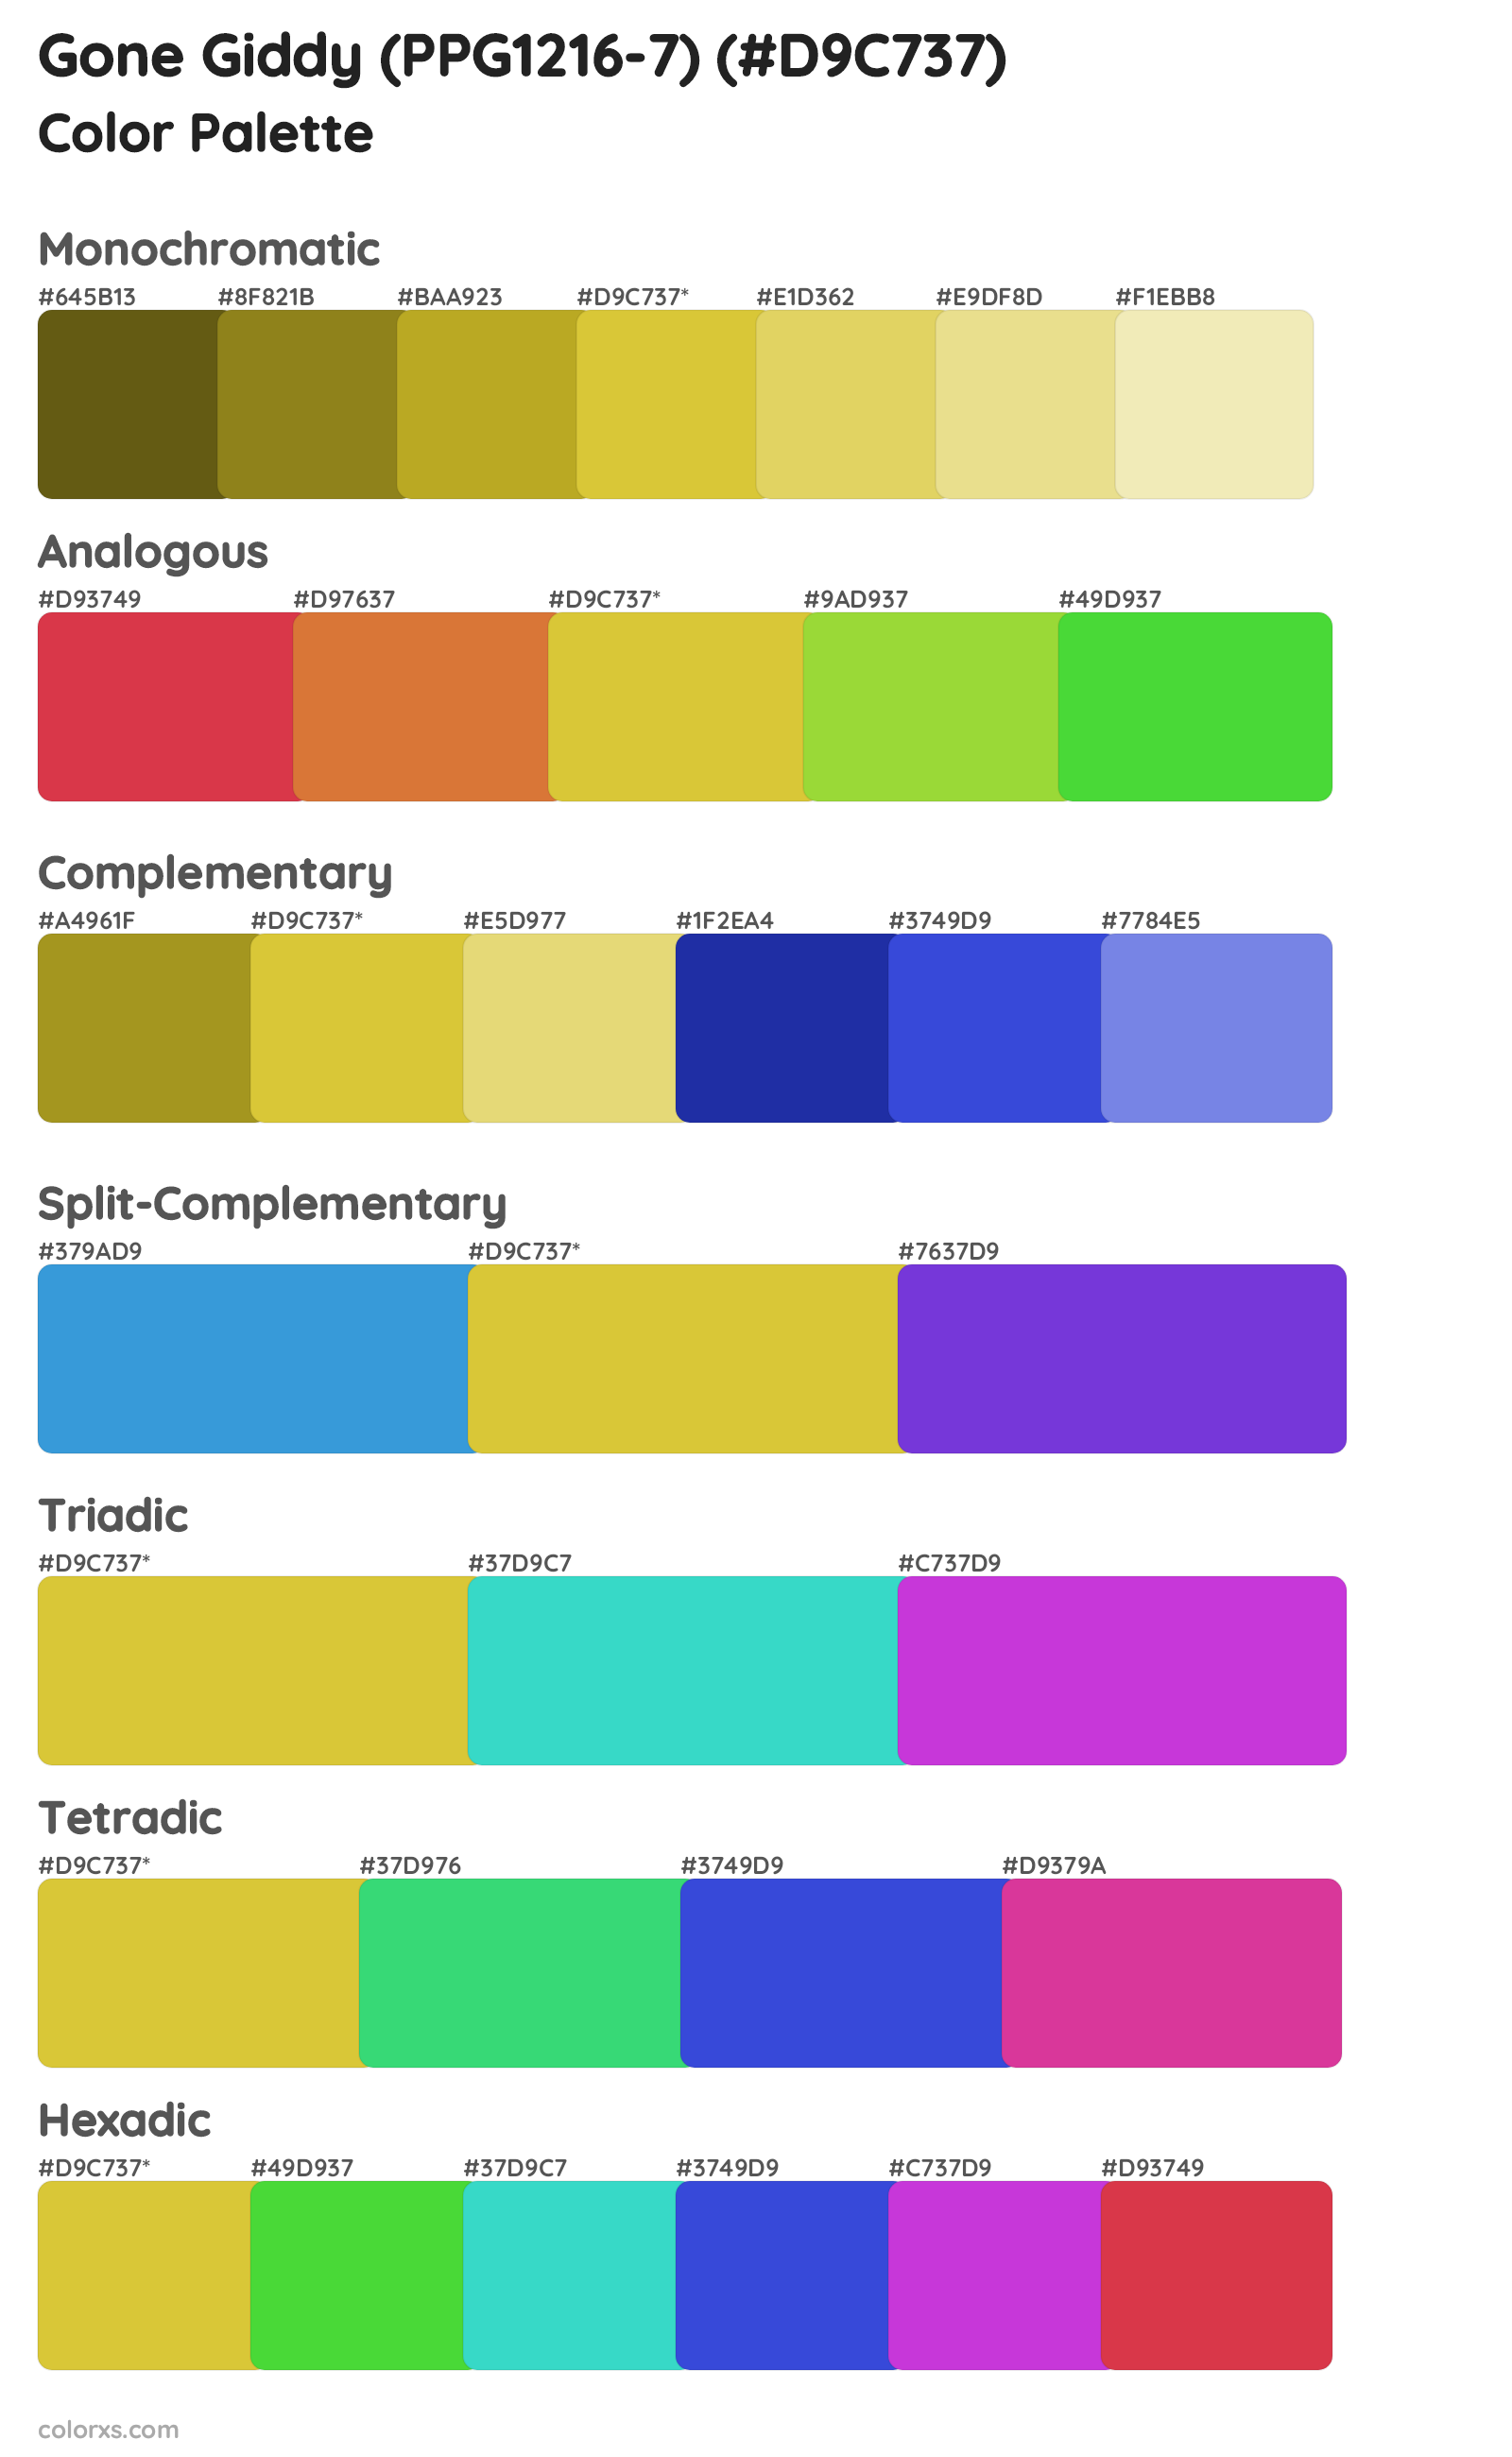 Gone Giddy (PPG1216-7) Color Scheme Palettes